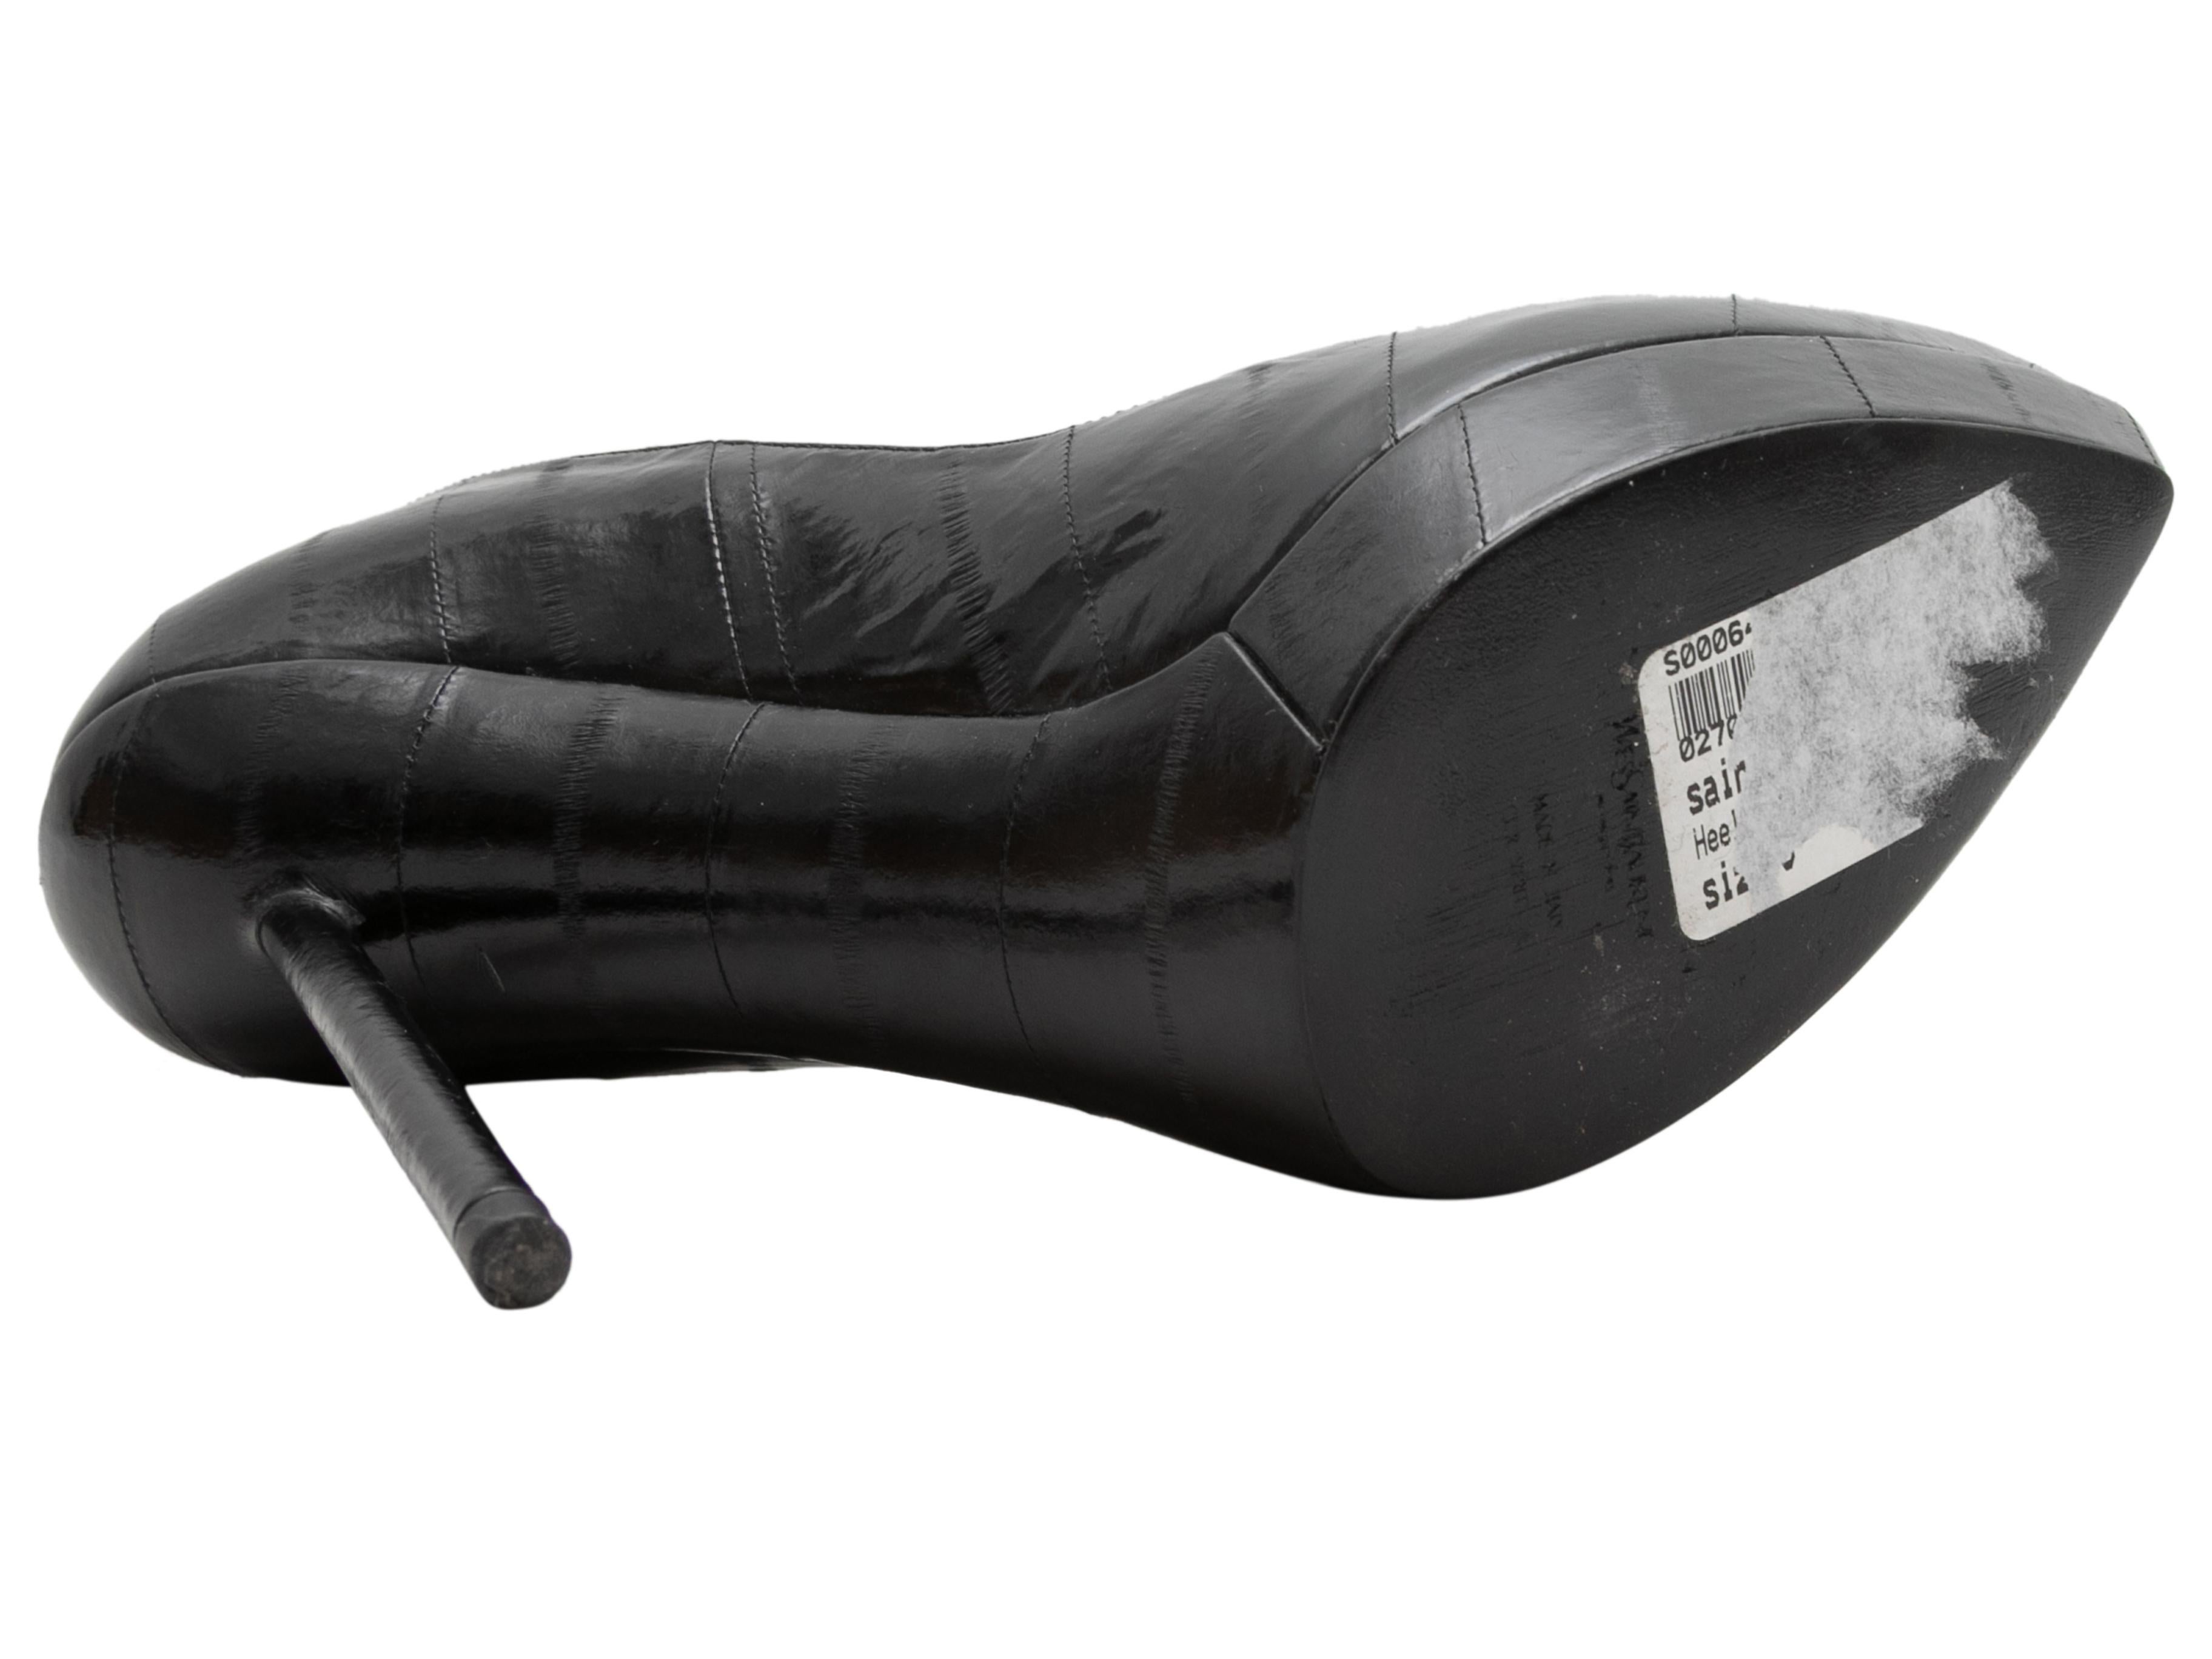 Escarpins à bouts pointus en cuir de crocodile embossé noir, Yves Saint Laurent. Hauteur de la plateforme 1,5